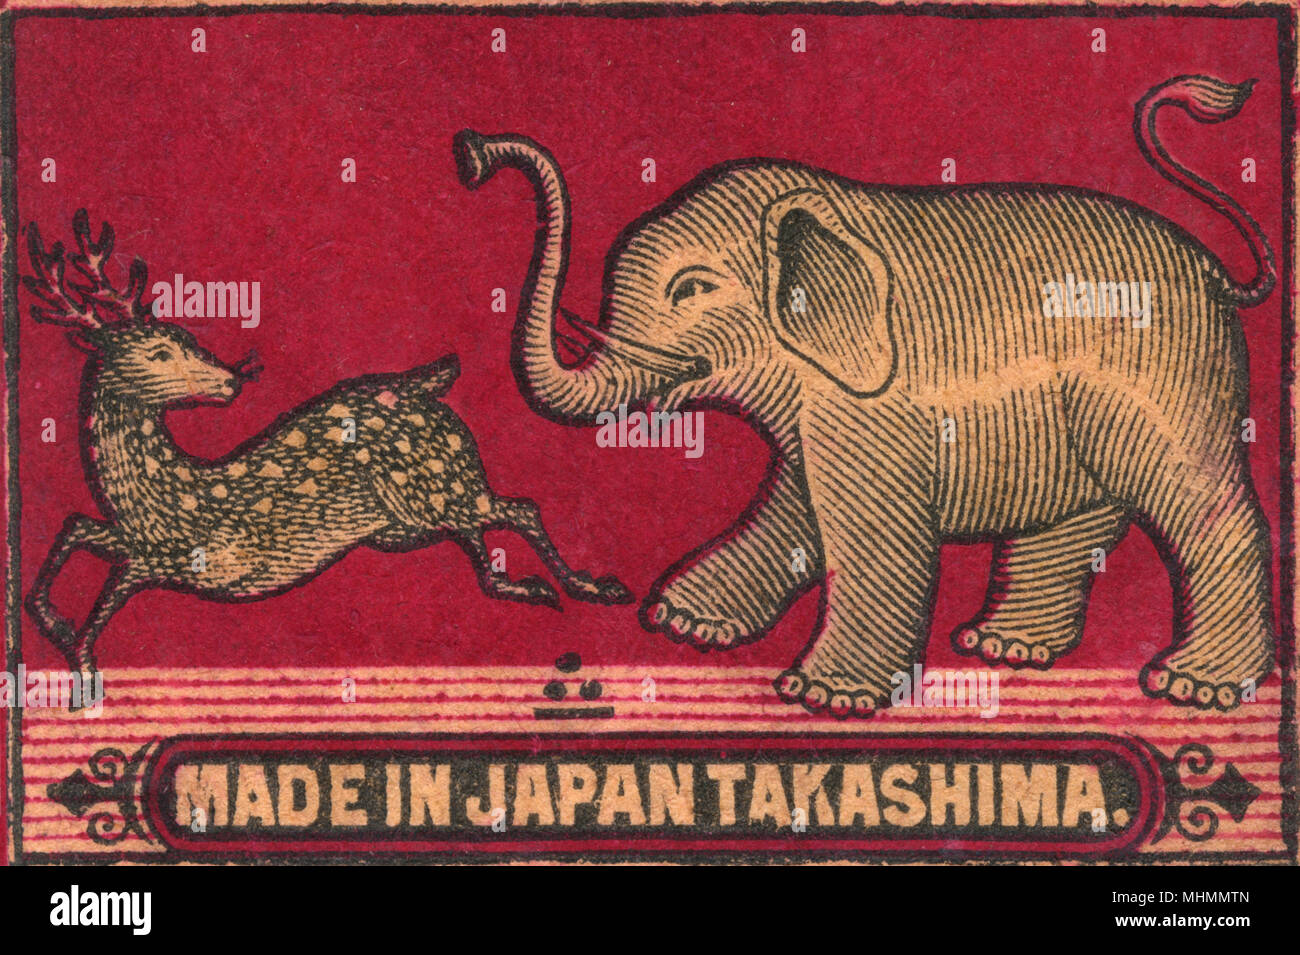 Giapponese vecchio Matchbox etichetta con un elefante a caccia di un cervo realizzato da Takashima in Giappone Data: c. 1910s Foto Stock